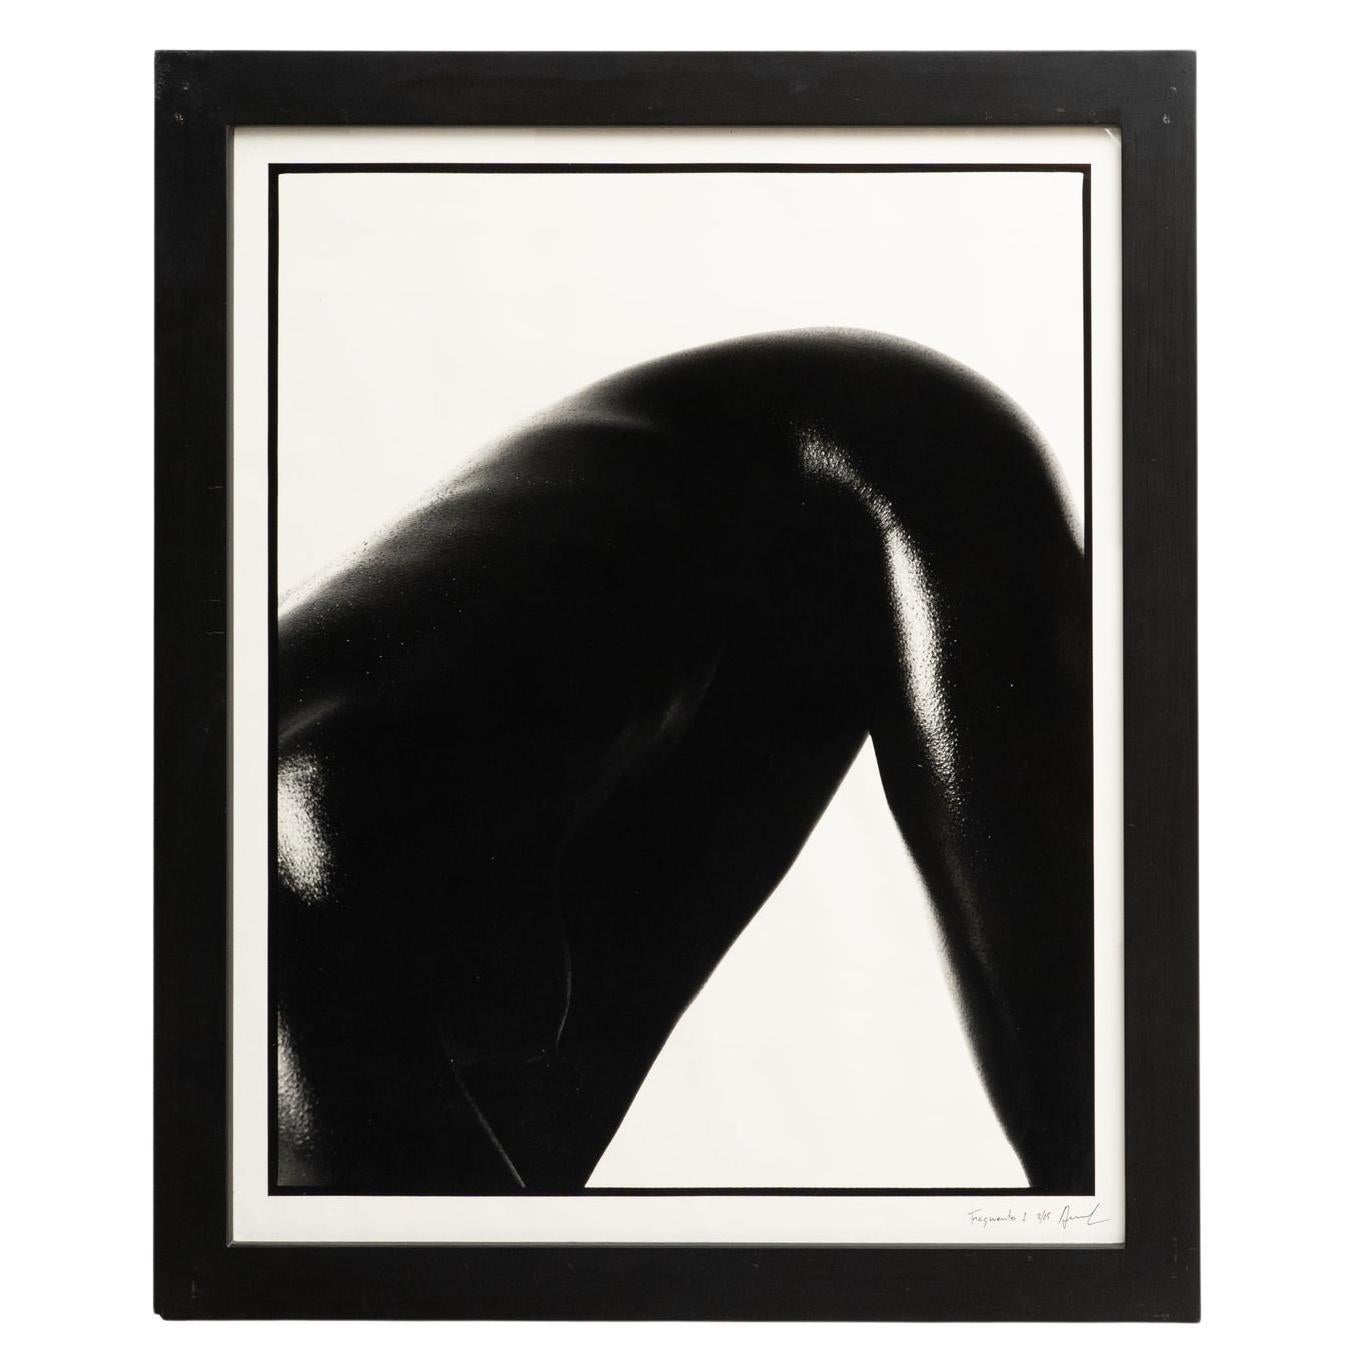 Miquel Arnal Contemporary Photography, Circa 1990